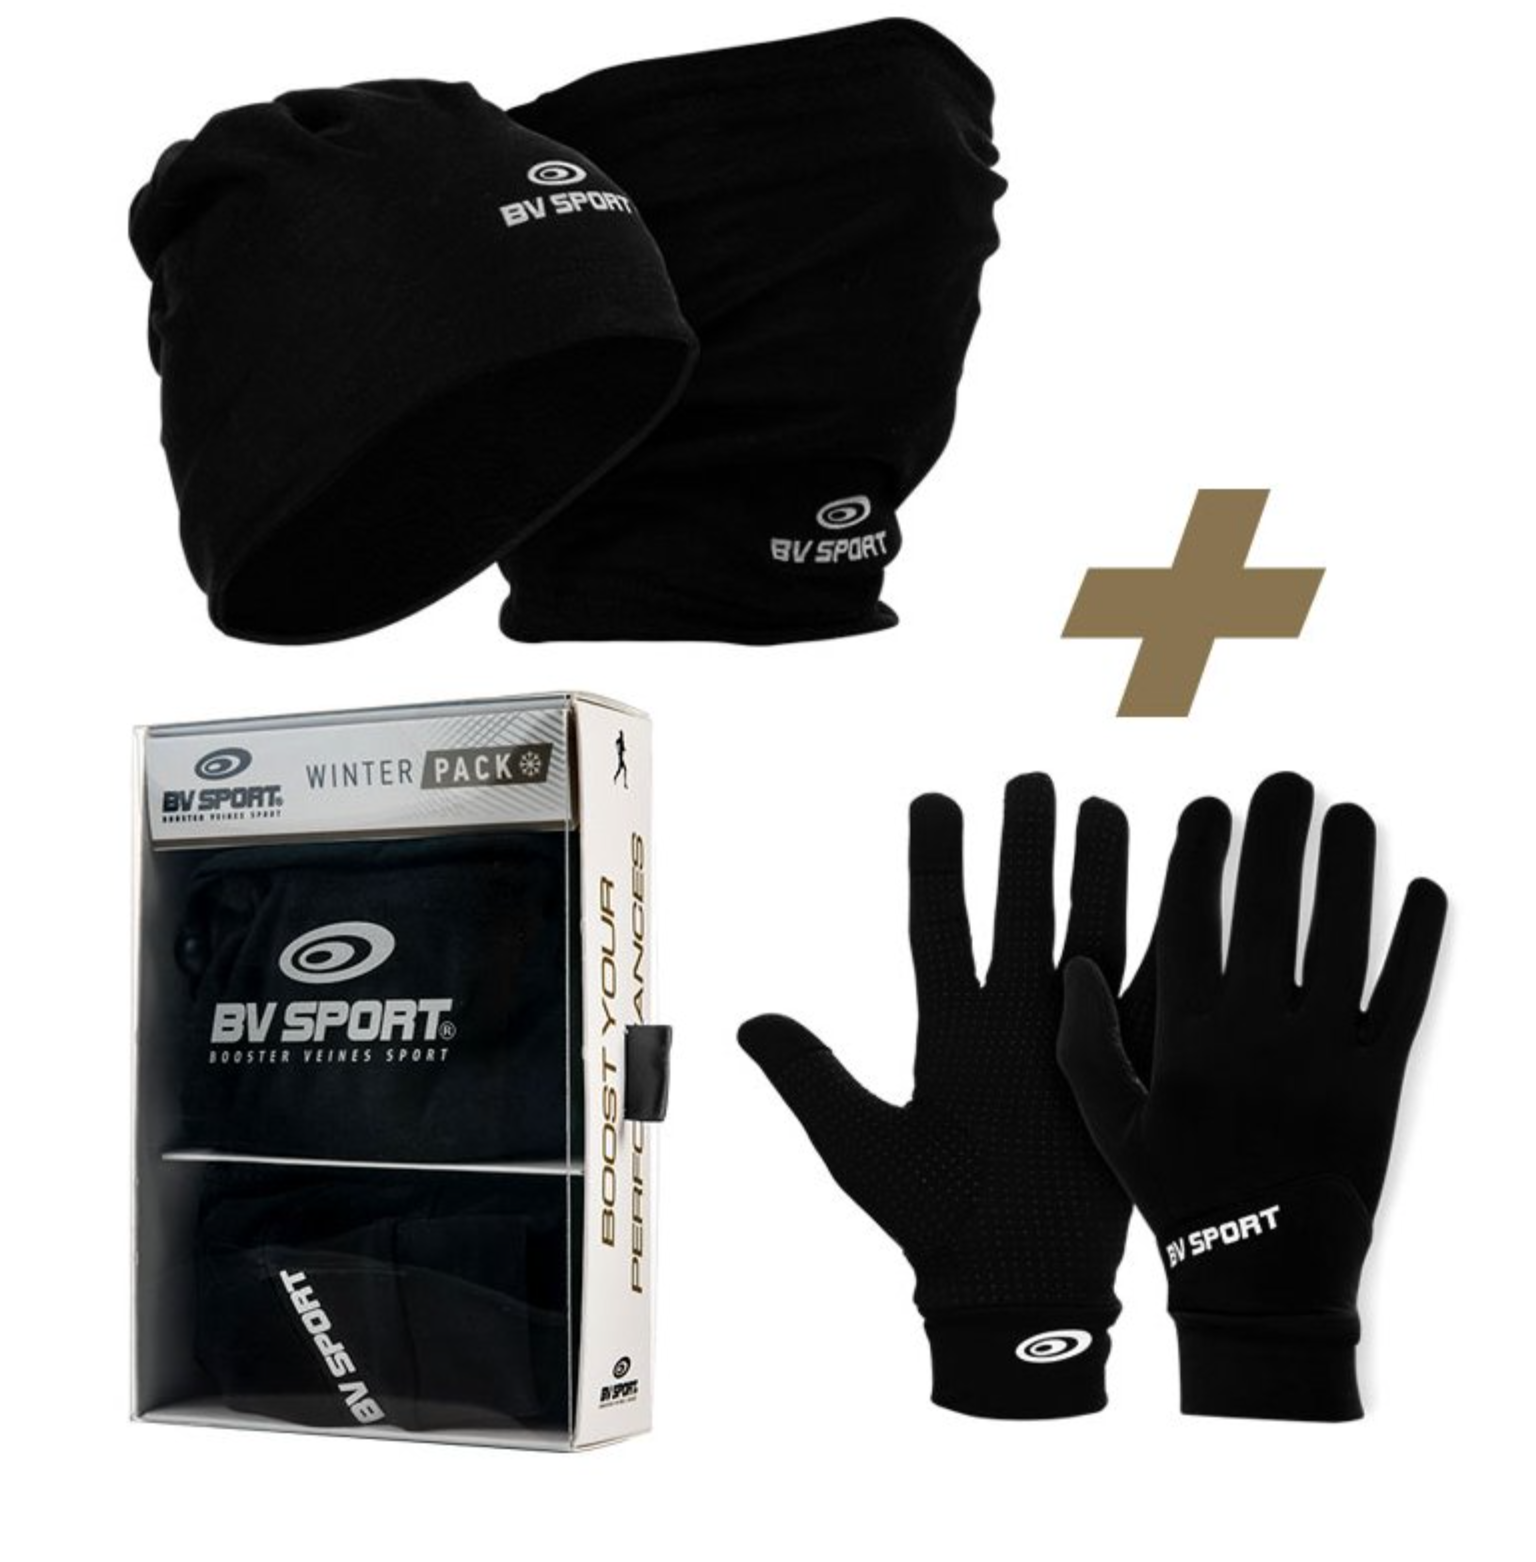 BV Sport Pack - Beanie & Running gloves